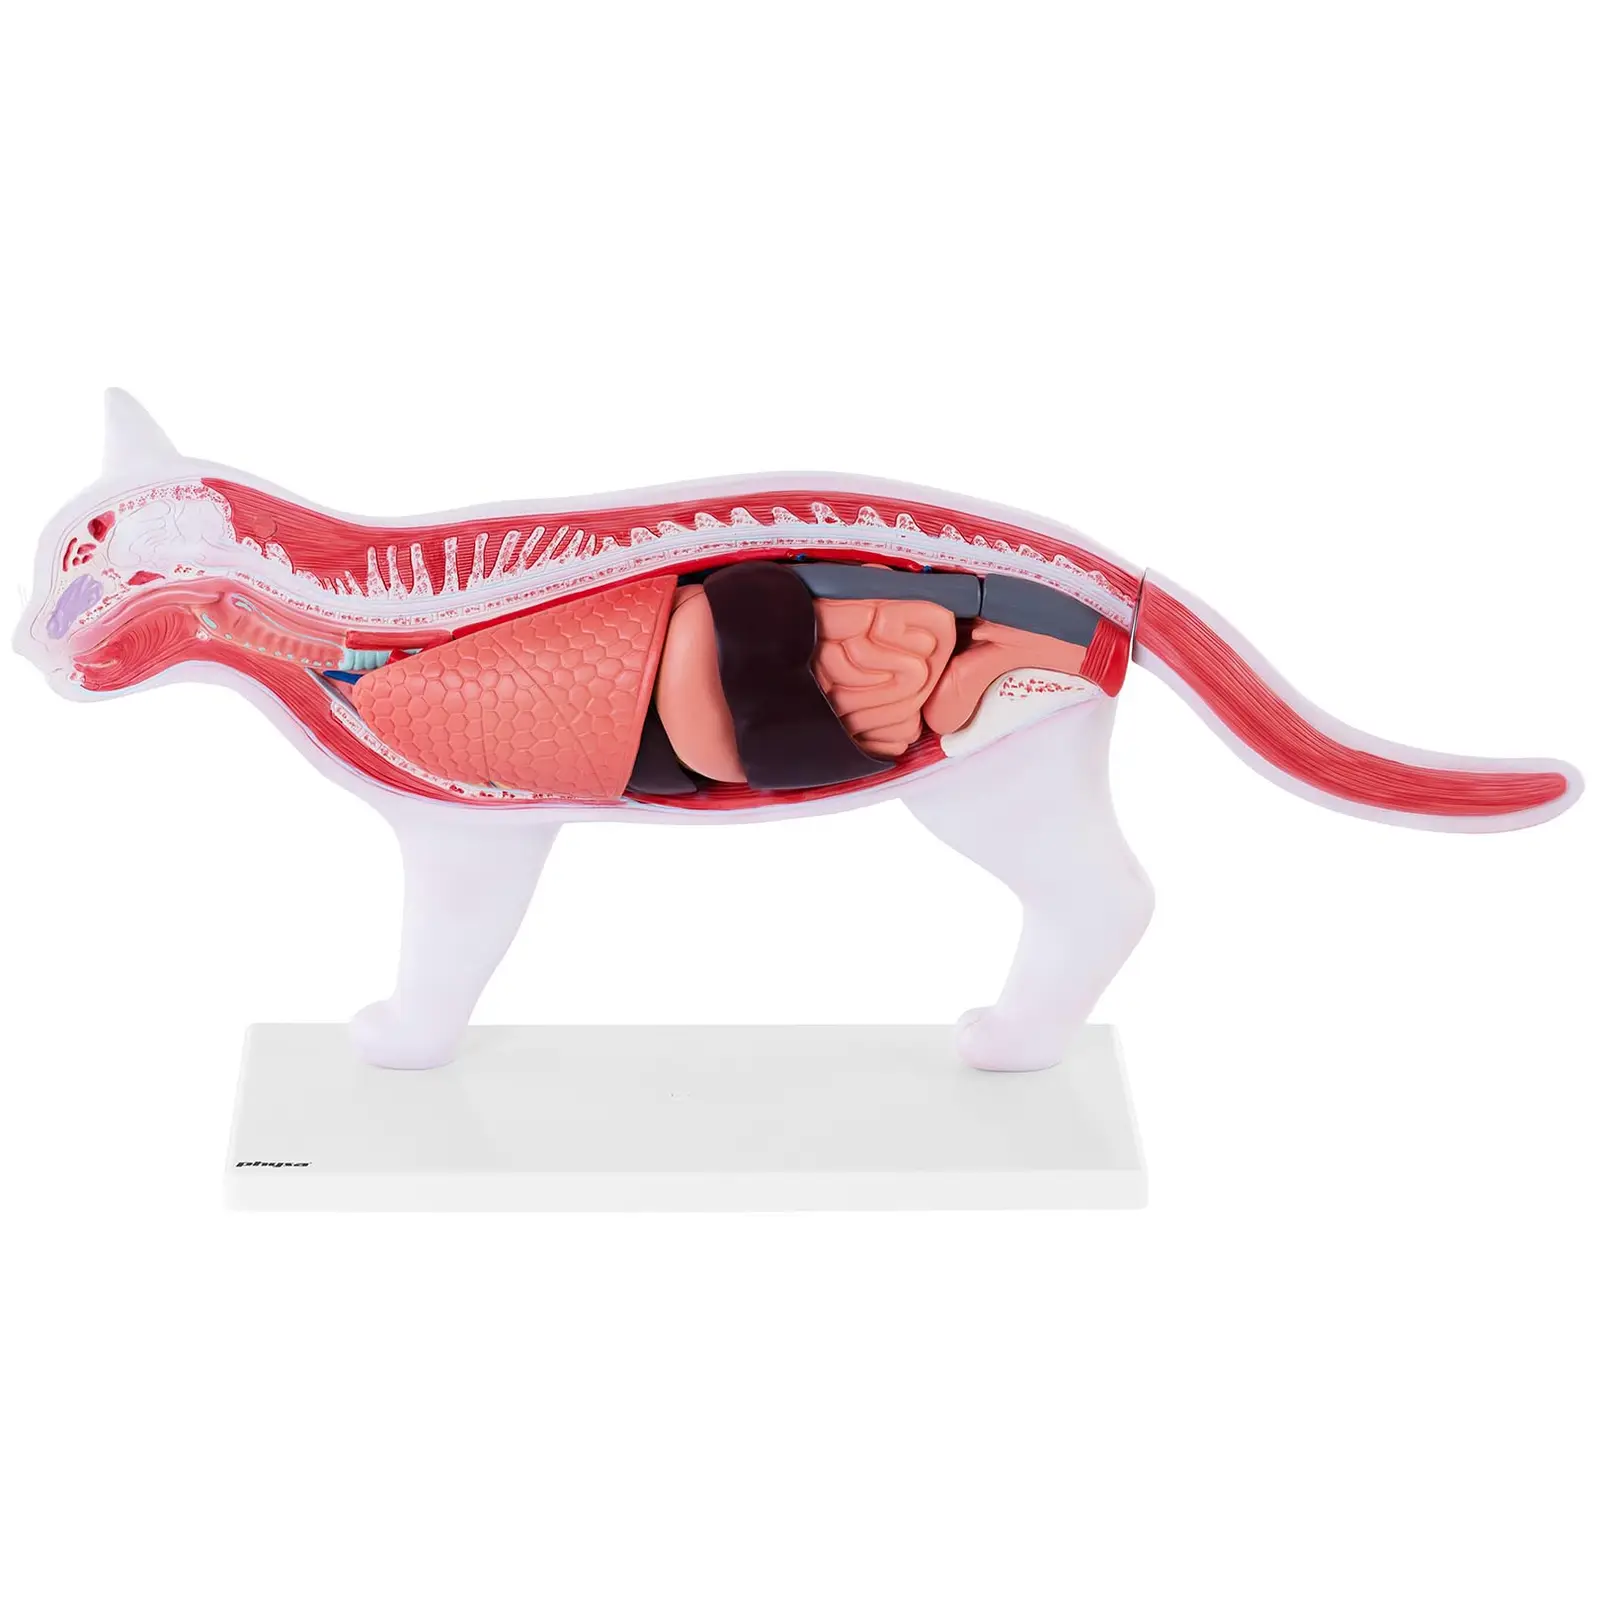 Anatomisk model af katten